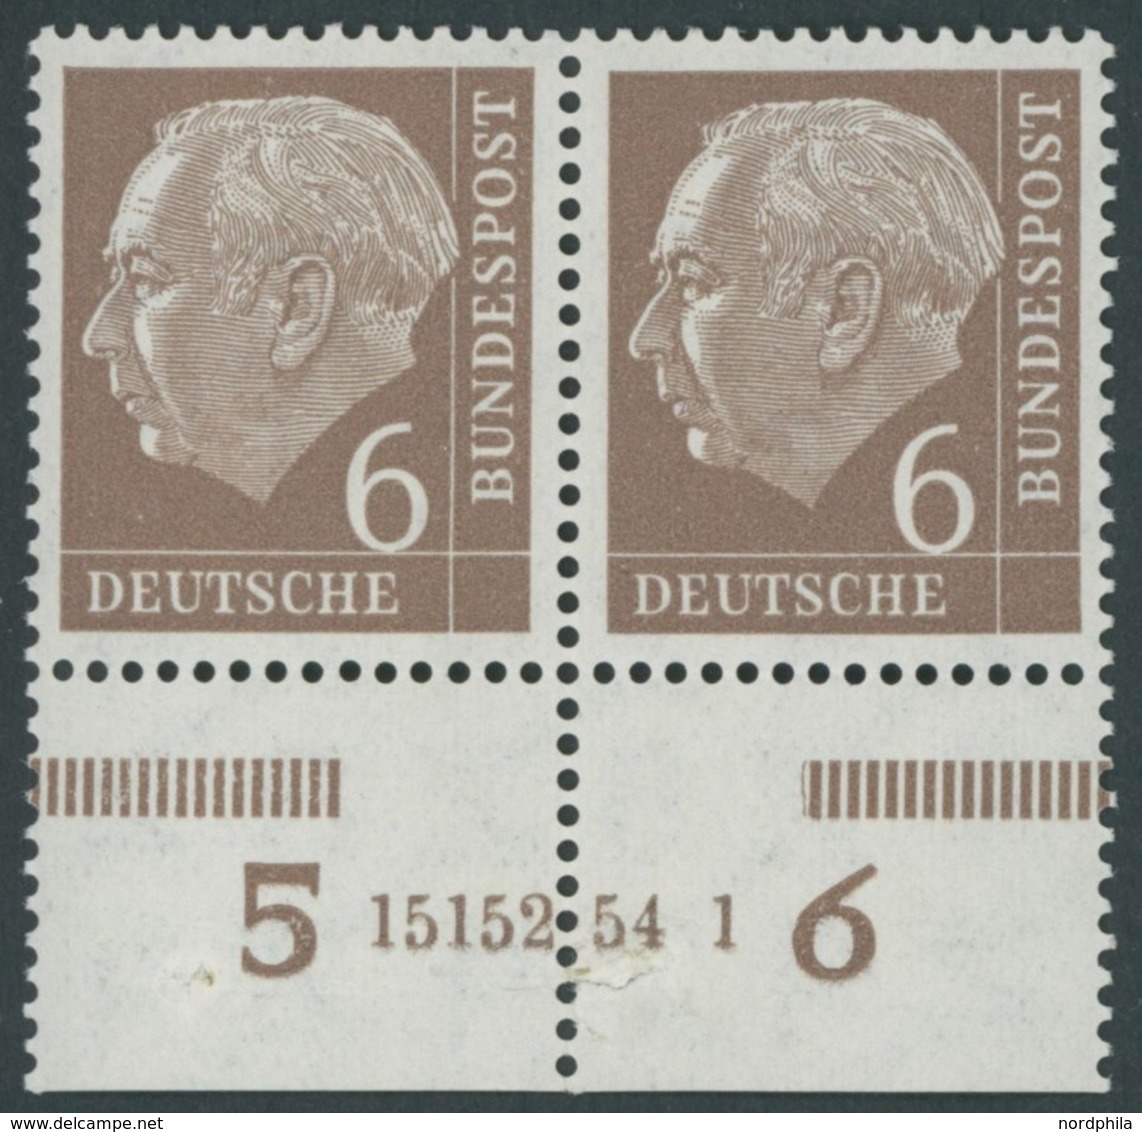 BUNDESREPUBLIK 180xHAN **, 1954, 6 Pf. Heuss, Unterrandpaar Mit HAN 15152.54 1, (Klammerspur), Marken Postfrisch, Pracht - Usados